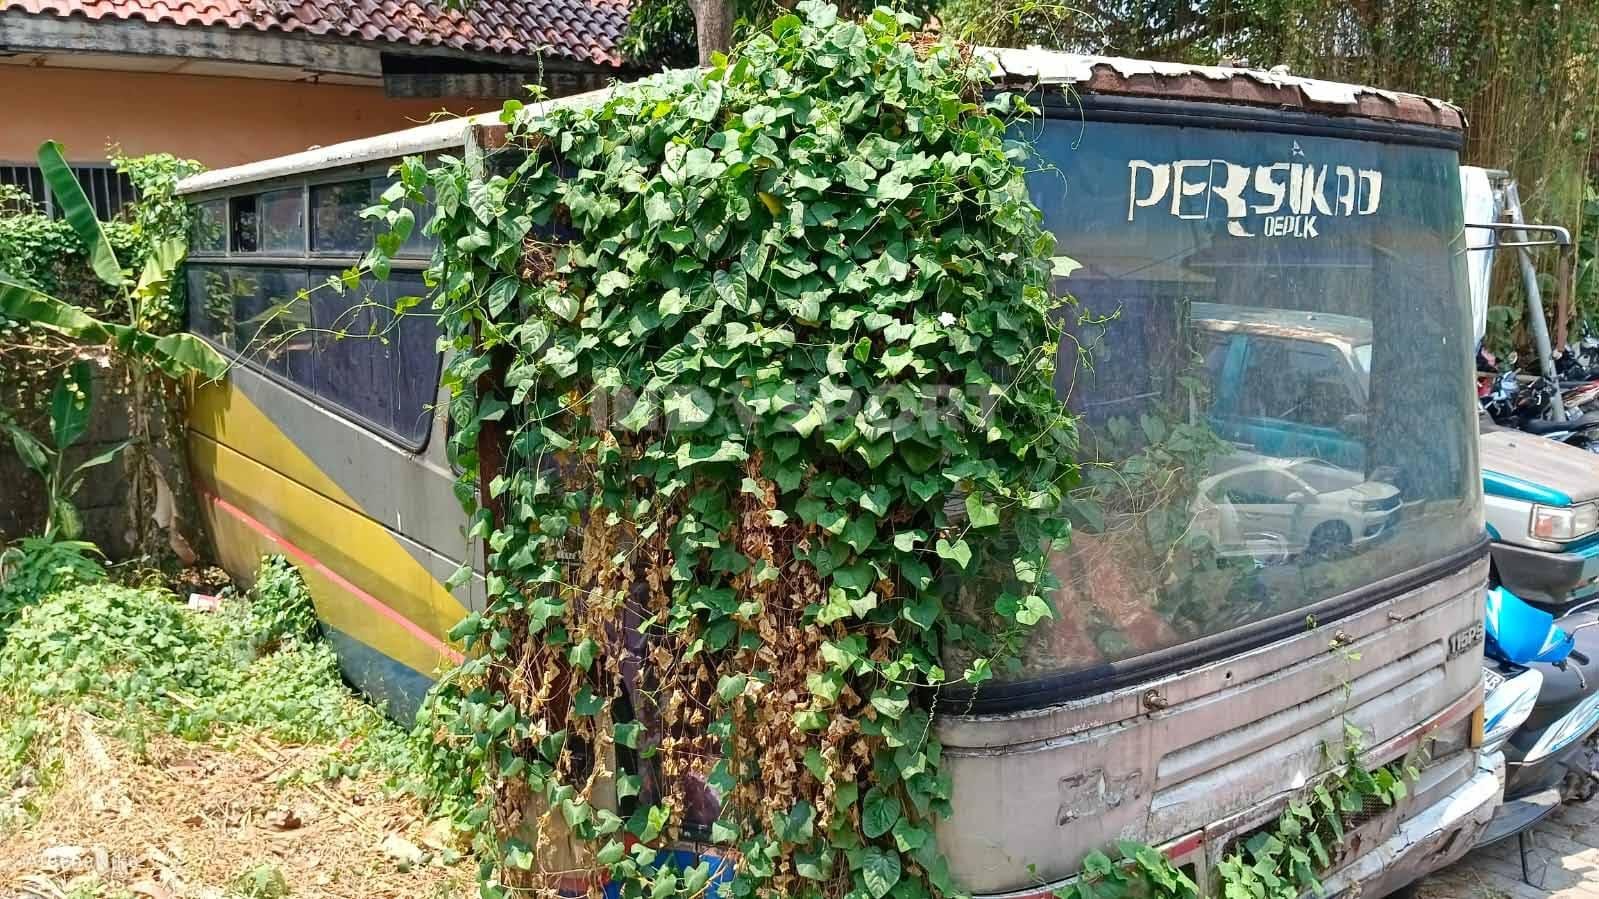 Bagian samping bus Persikad Depok sudah ditutupi tumbuhan liar efek ditinggalkan selama belasan tahun. (Foto: Indra Citra Sena/INDOSPORT)